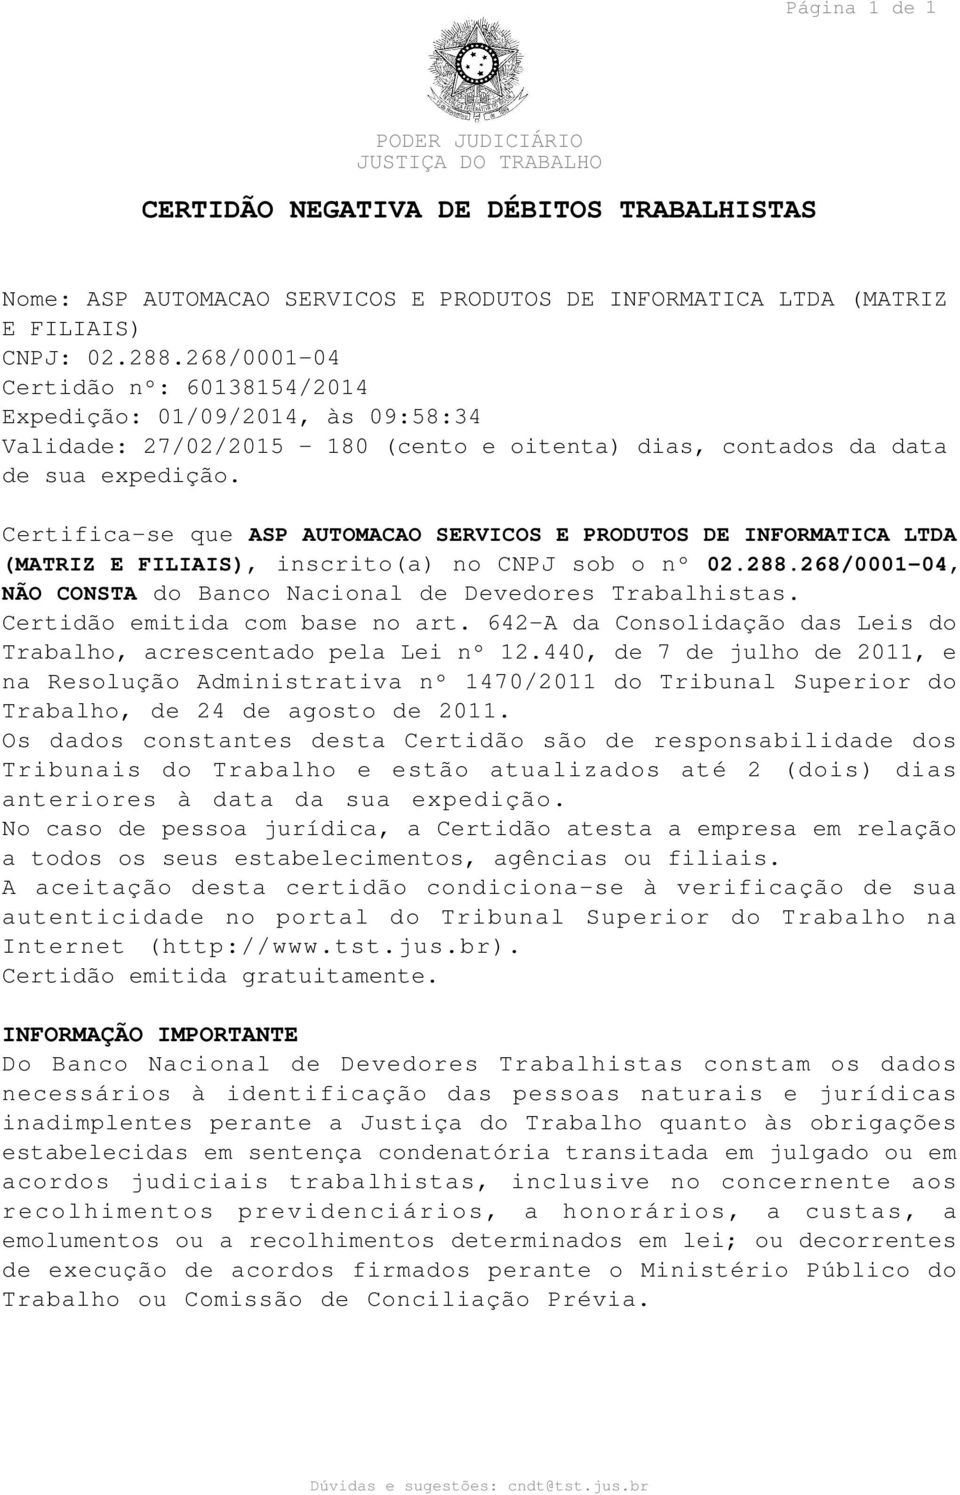 Certifica-se que ASP AUTOMACAO SERVICOS E PRODUTOS DE INFORMATICA LTDA (MATRIZ E FILIAIS), inscrito(a) no CNPJ sob o nº 02.288.268/0001-04, NÃO CONSTA do Banco Nacional de Devedores Trabalhistas.